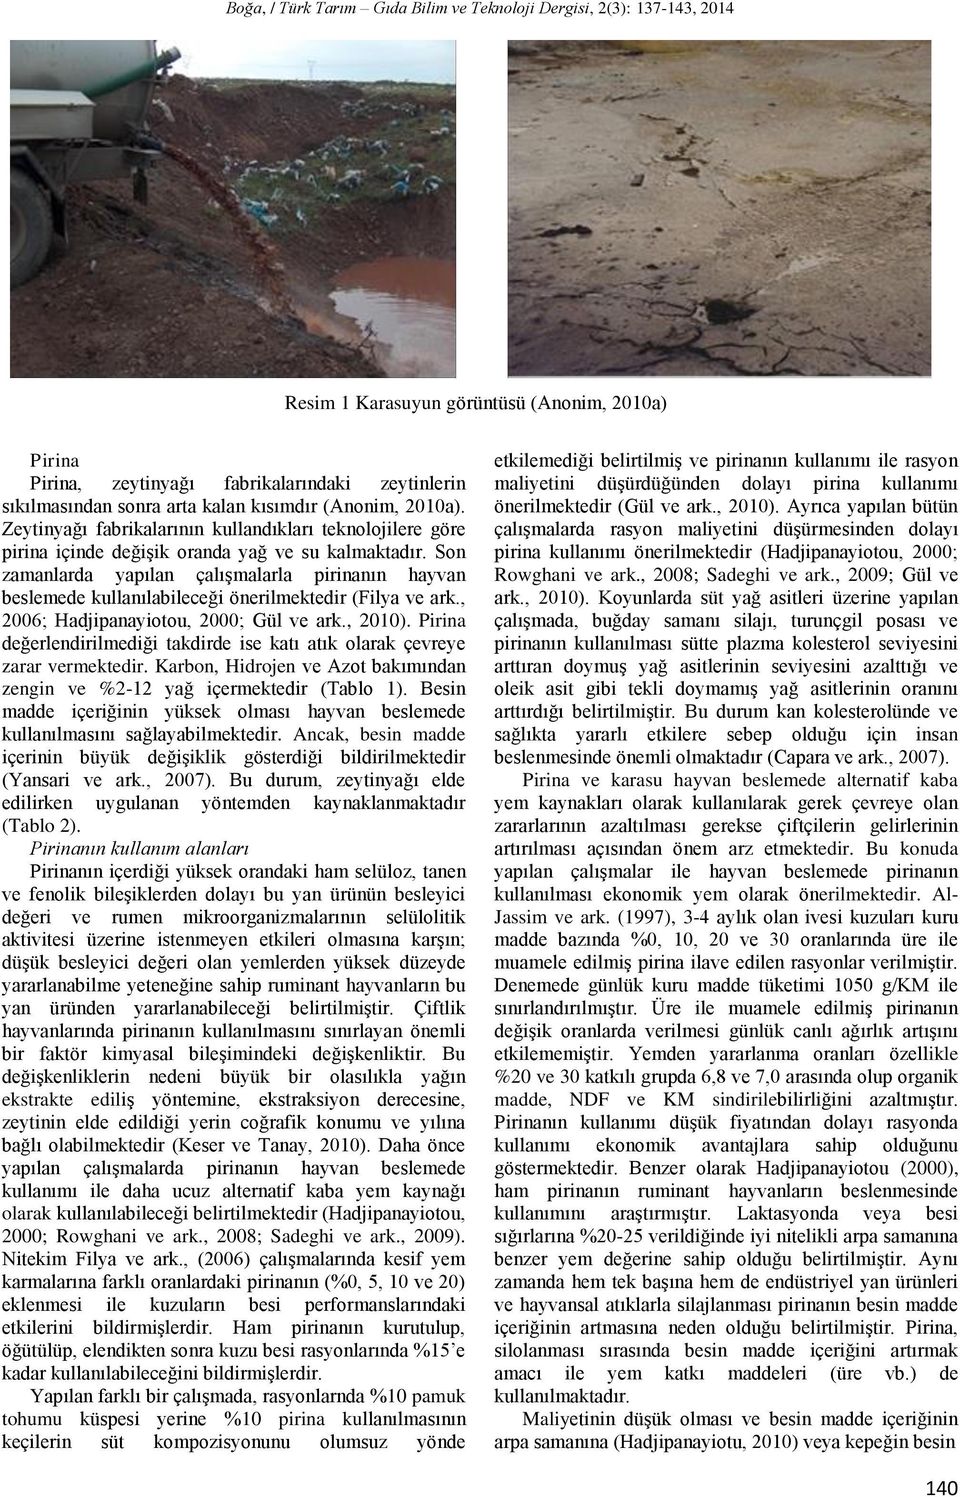 Son zamanlarda yapılan çalışmalarla pirinanın hayvan beslemede kullanılabileceği önerilmektedir (Filya ve ark., 2006; Hadjipanayiotou, 2000; Gül ve ark., 2010).